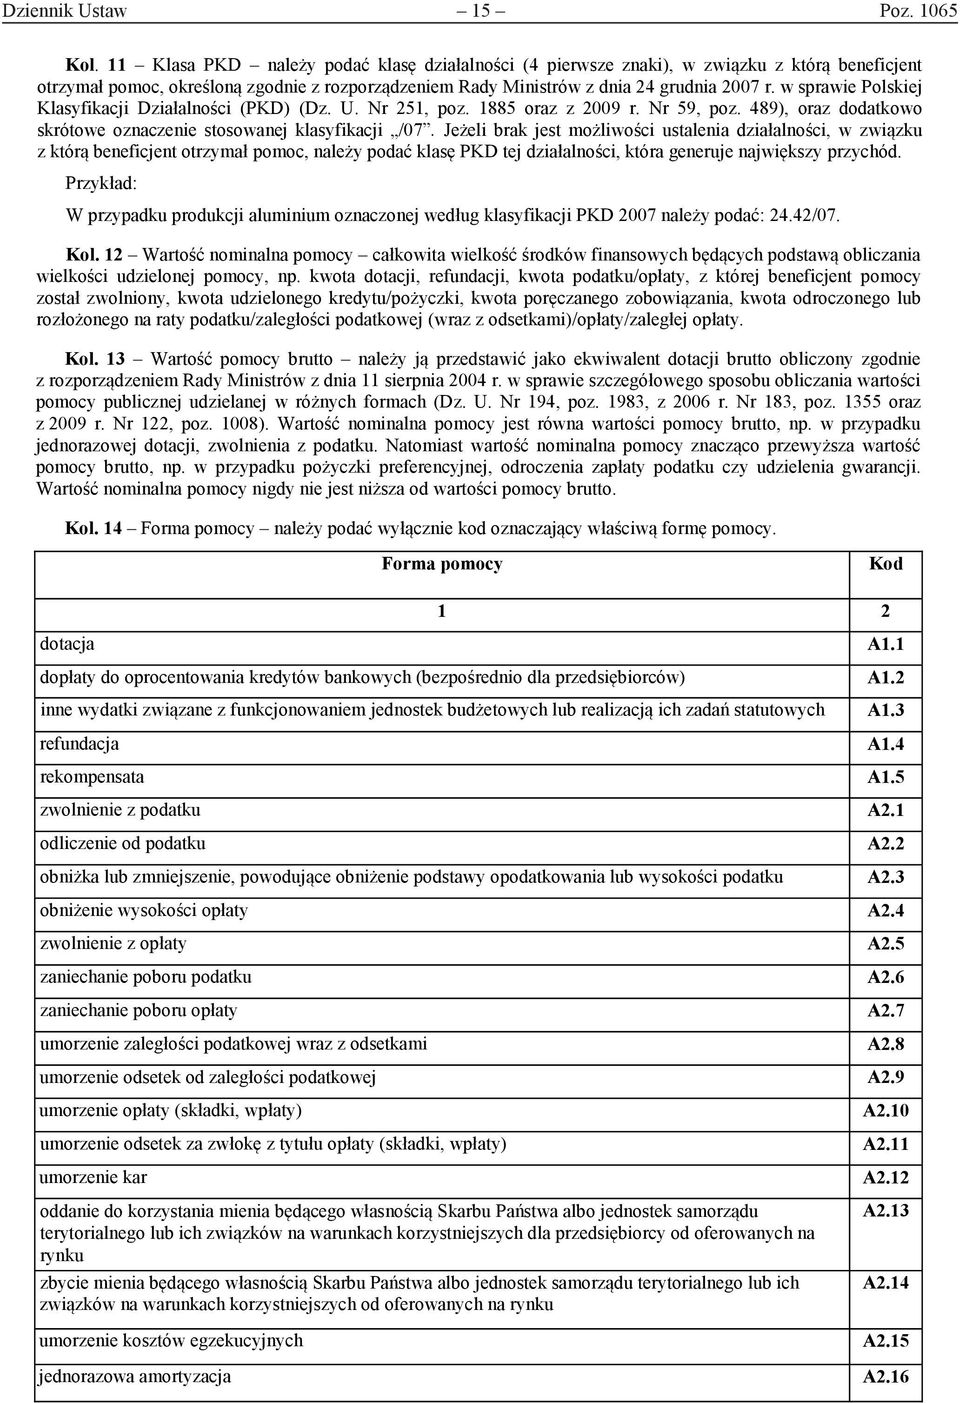 w sprawie Polskiej Klasyfikacji Działalności (PKD) (Dz. U. Nr 251, poz. 1885 oraz z 2009 r. Nr 59, poz. 489), oraz dodatkowo skrótowe oznaczenie stosowanej klasyfikacji /07.